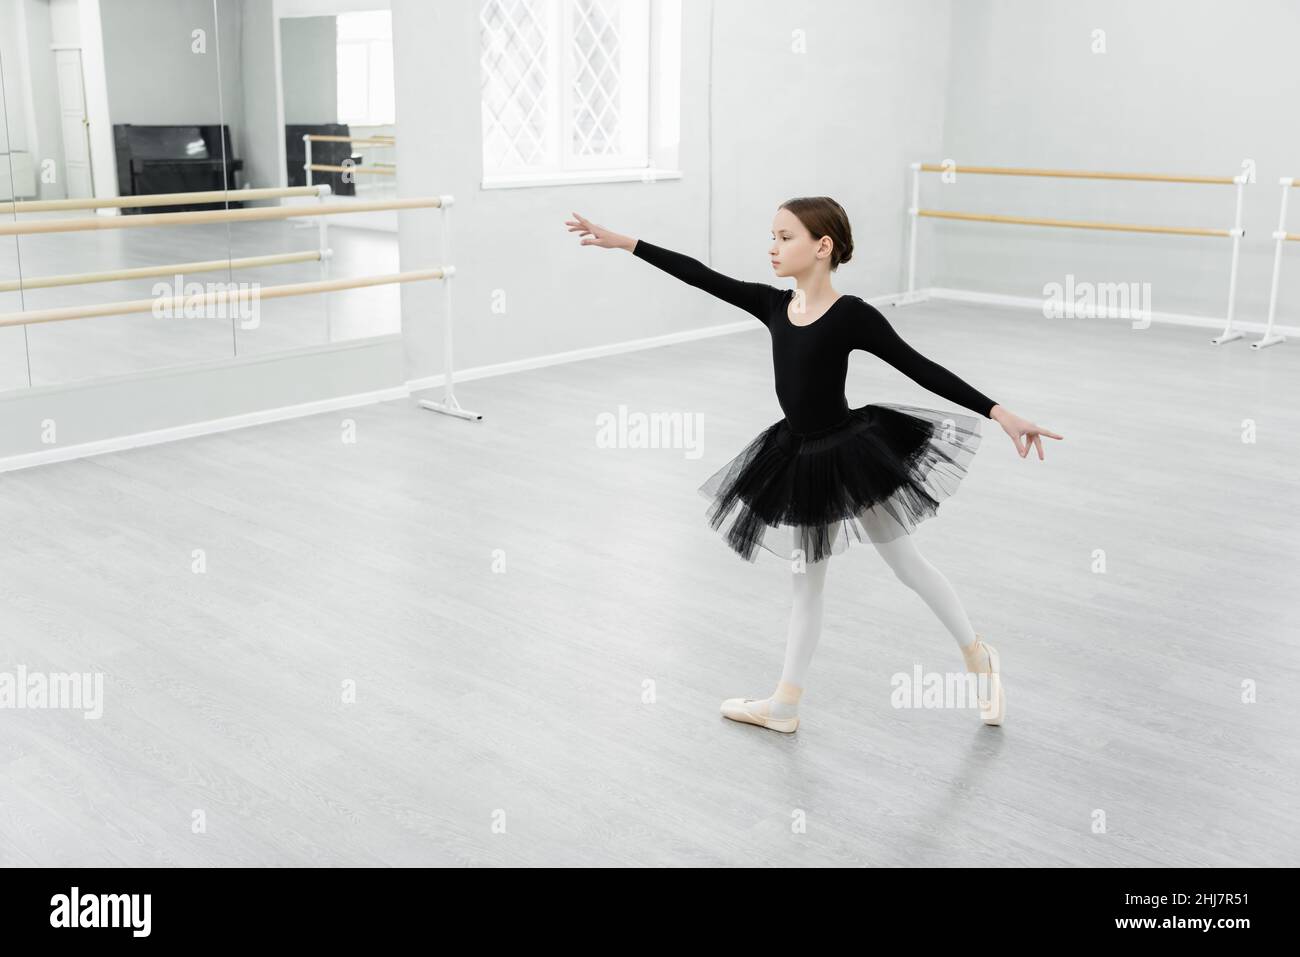 vue en longueur de fille en tutu noir dansant pendant la répétition dans le studio Banque D'Images